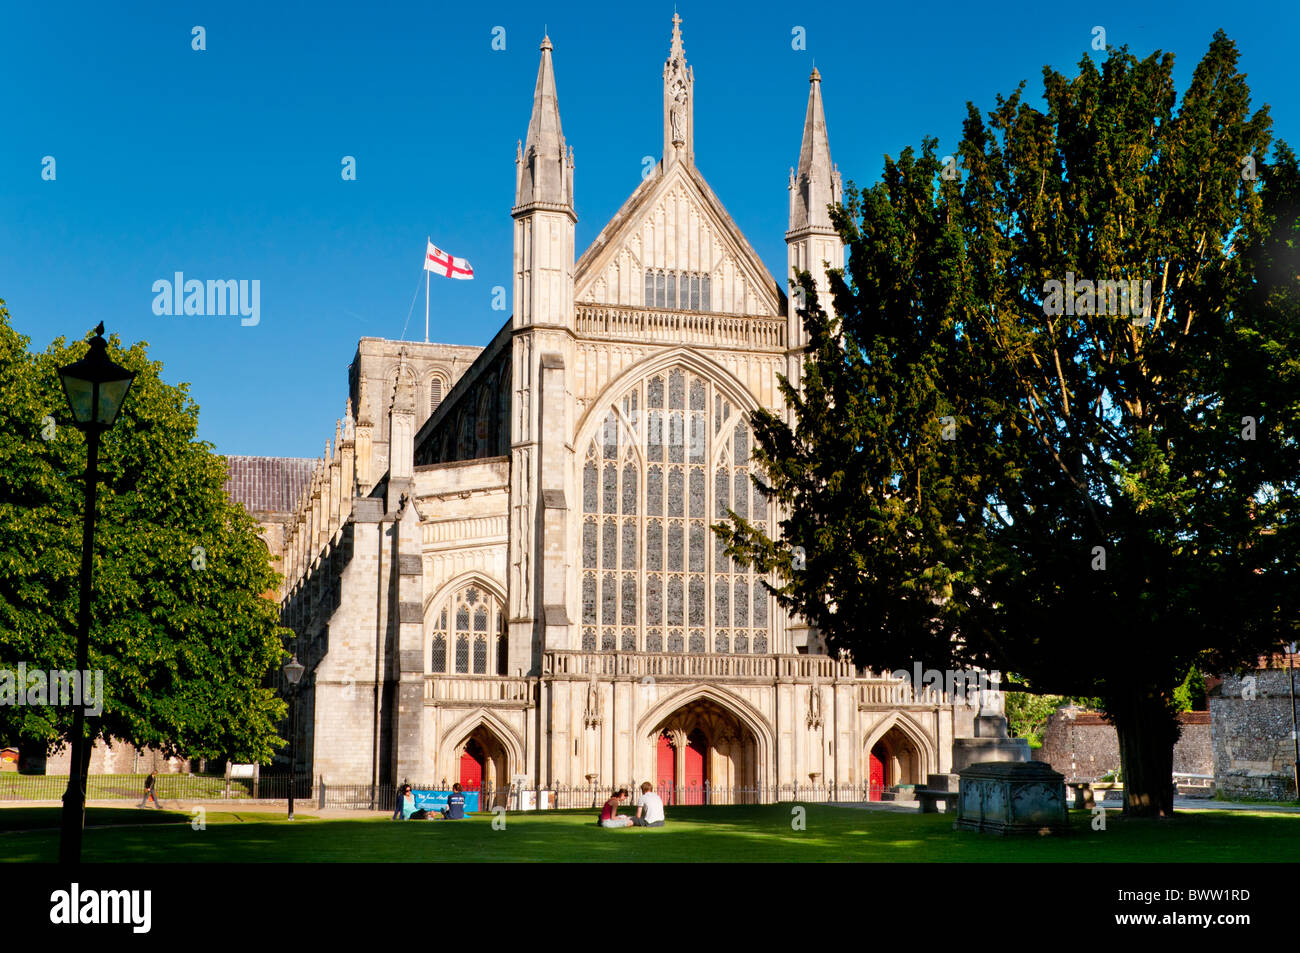 Pavillon de St George battant sur la cathédrale de Winchester Hampshire Angleterre pendant l'été porte ouest view Banque D'Images